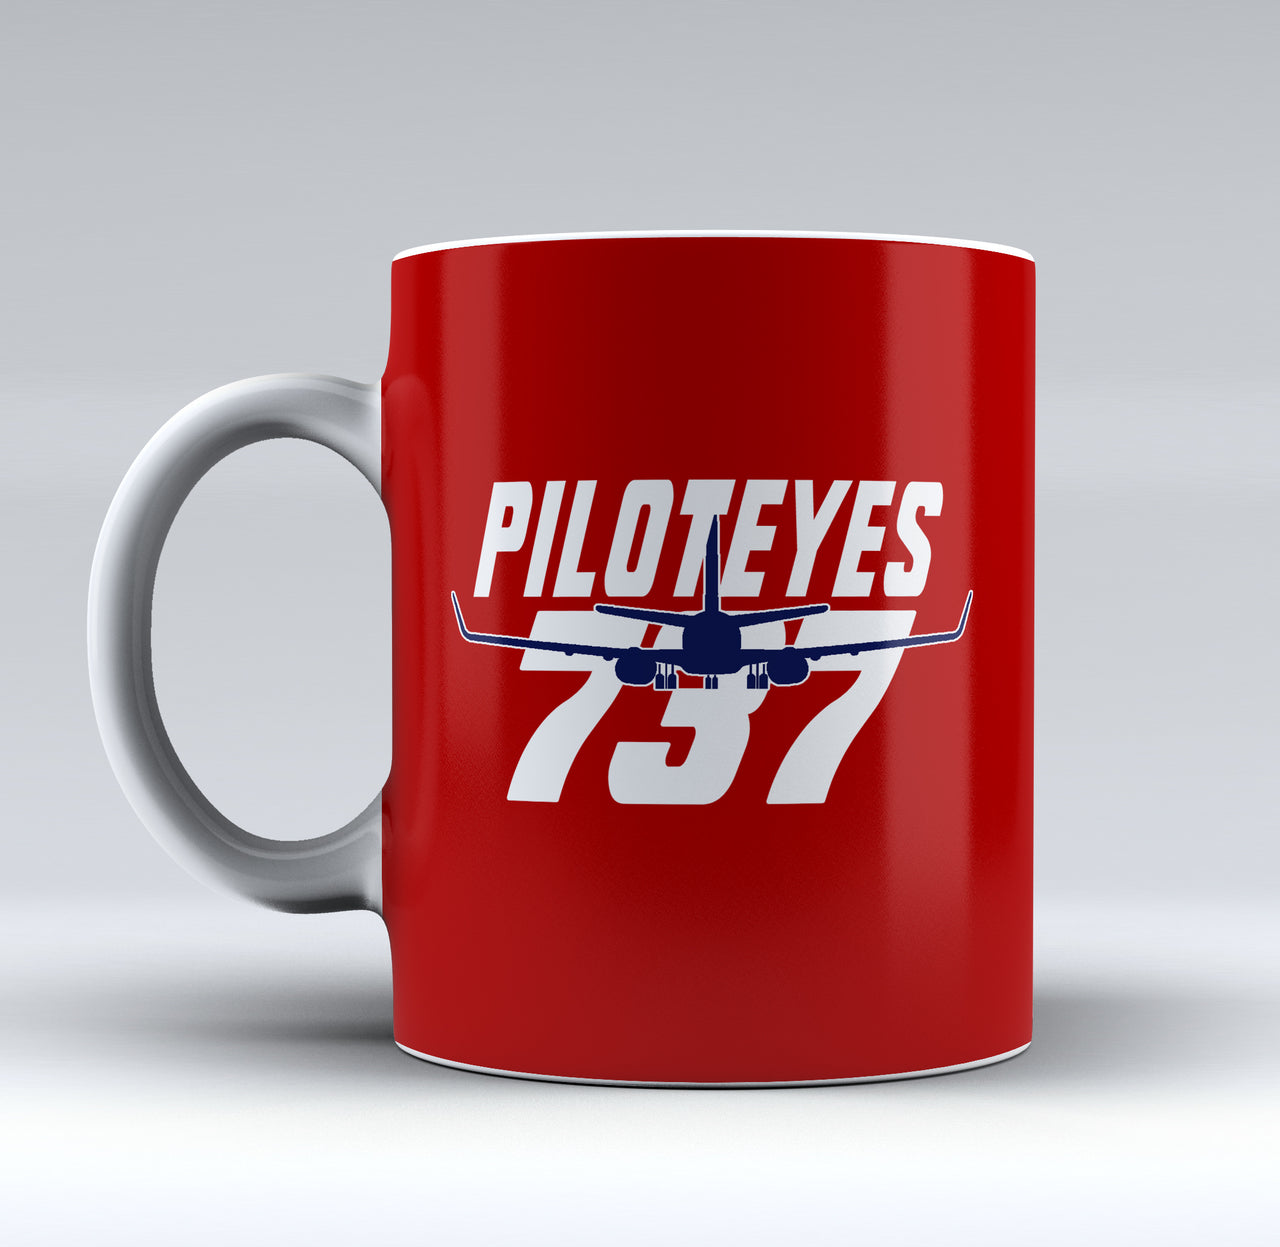 Amazing Piloteyes737 Designed Mugs